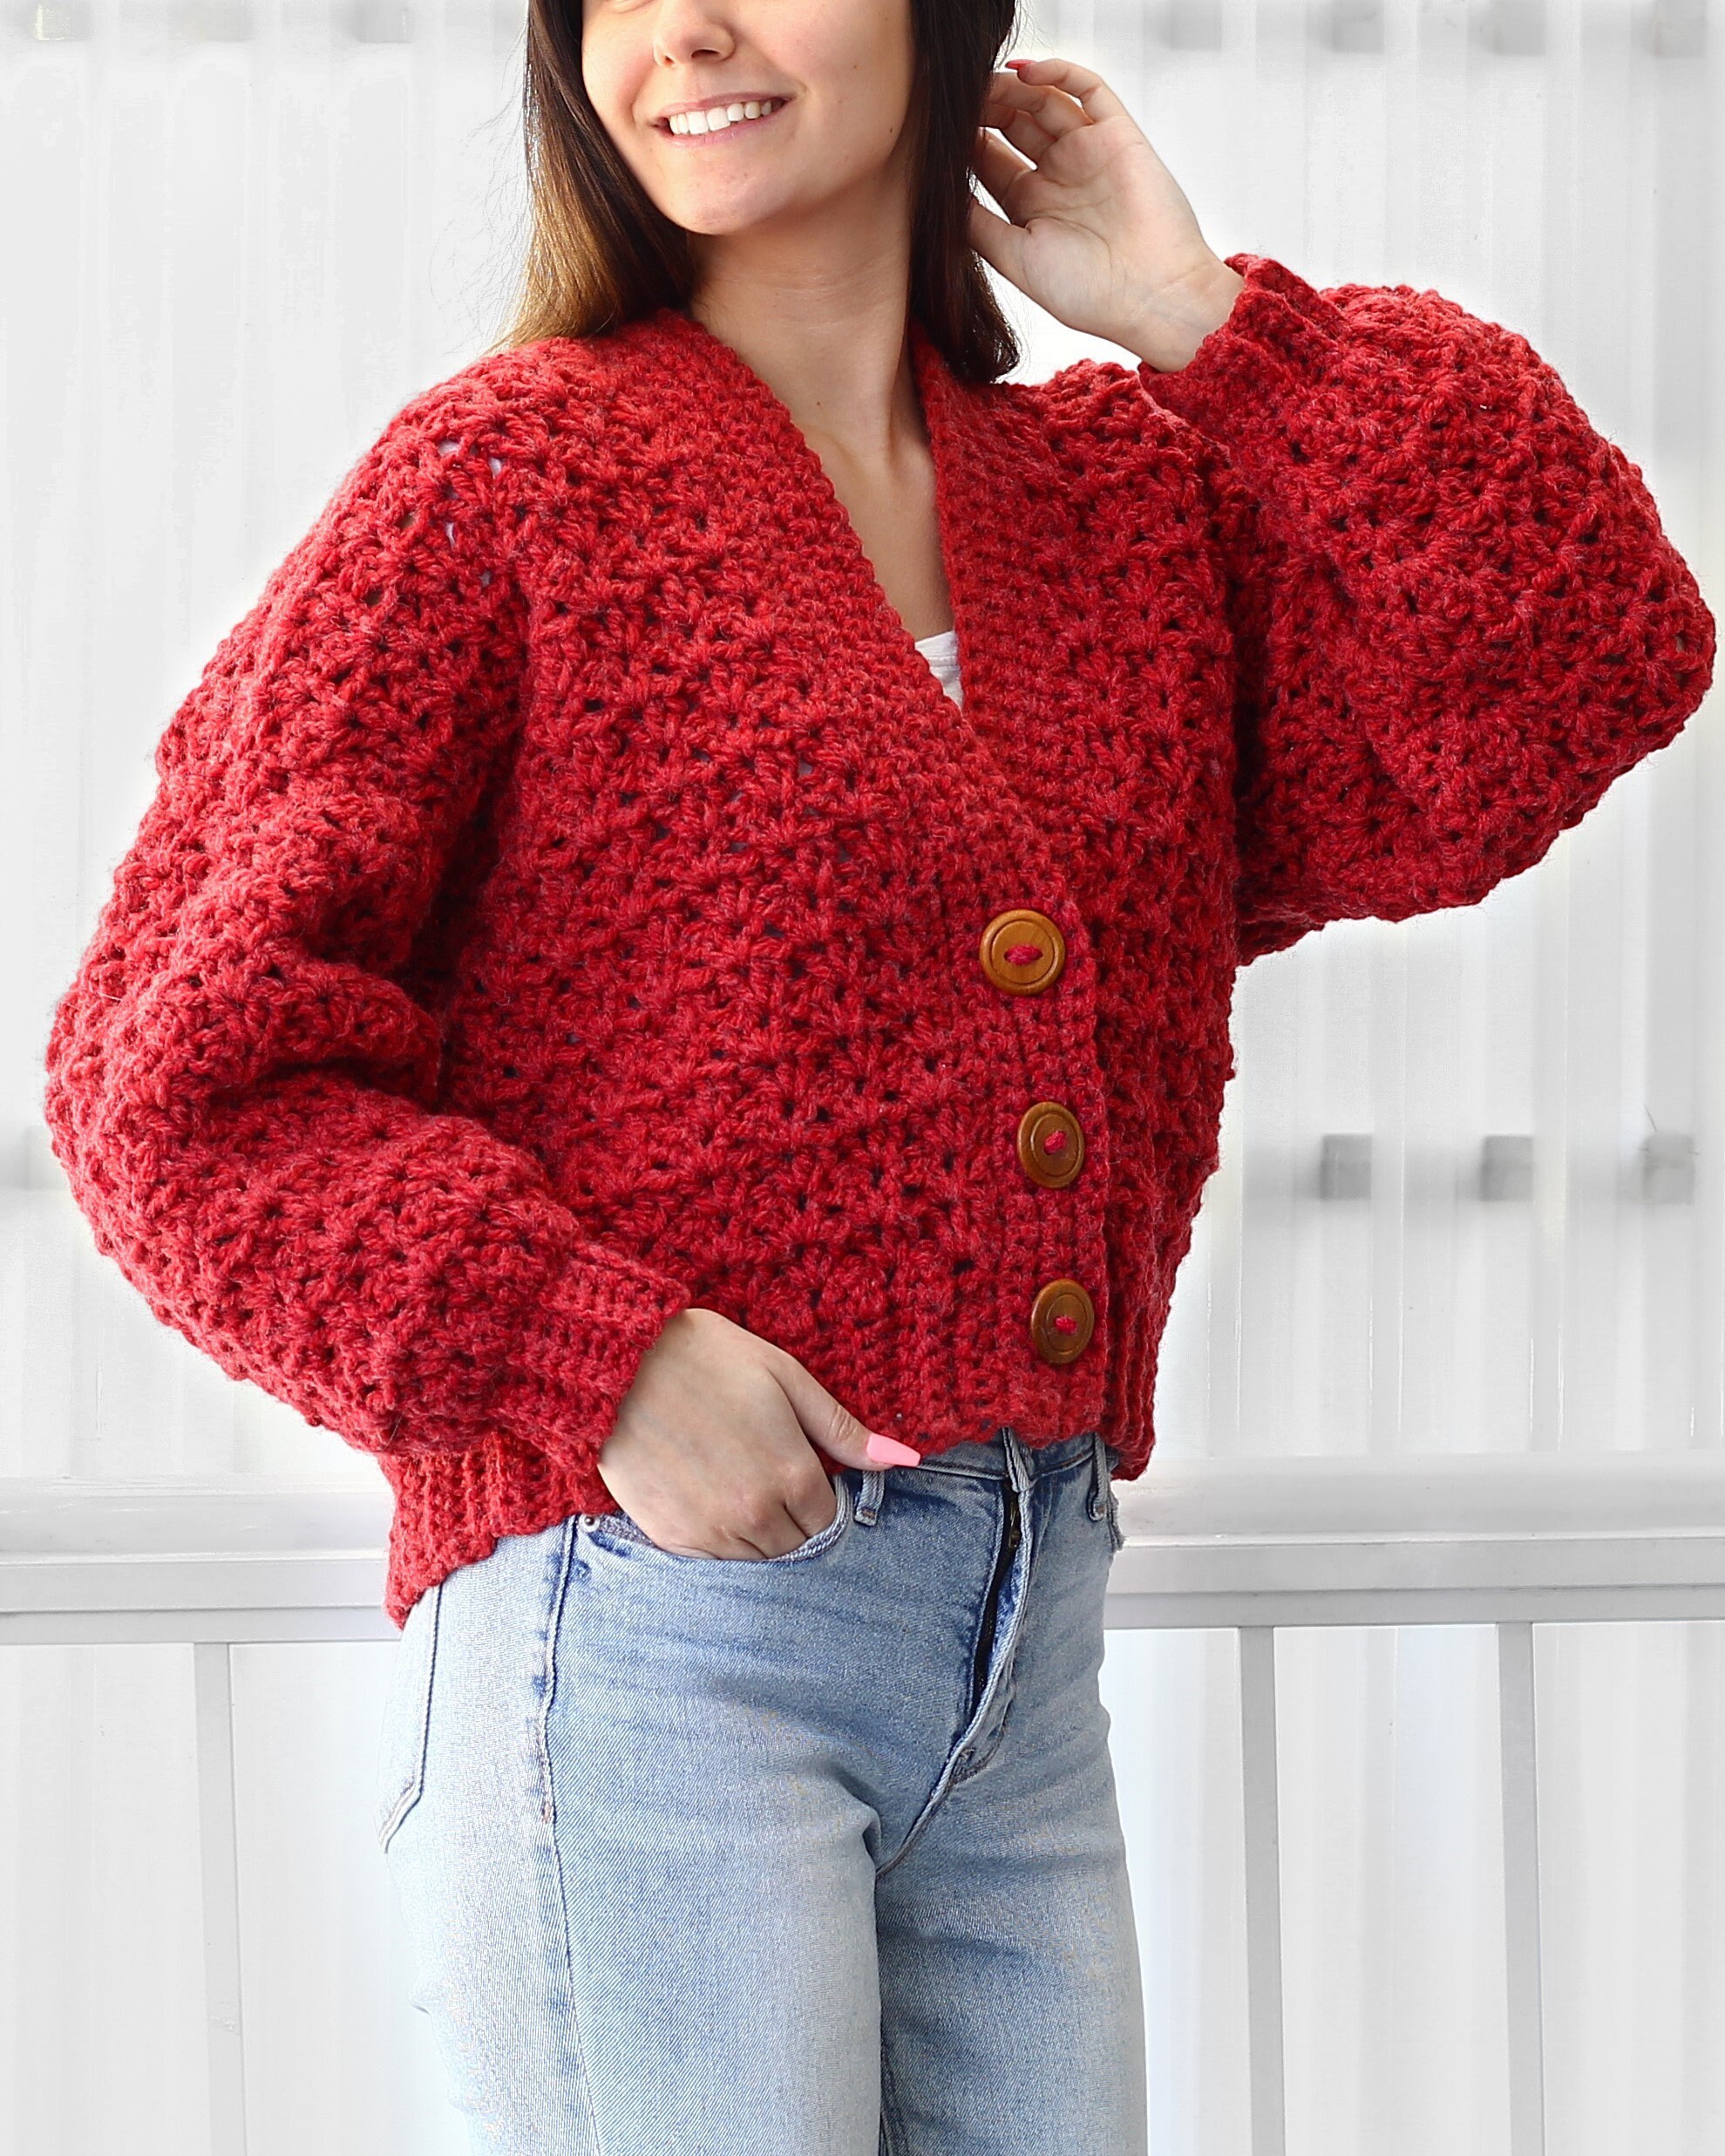 Buy Crochet Pattern-addison Crochet Cardigan Pattern Pdf-women